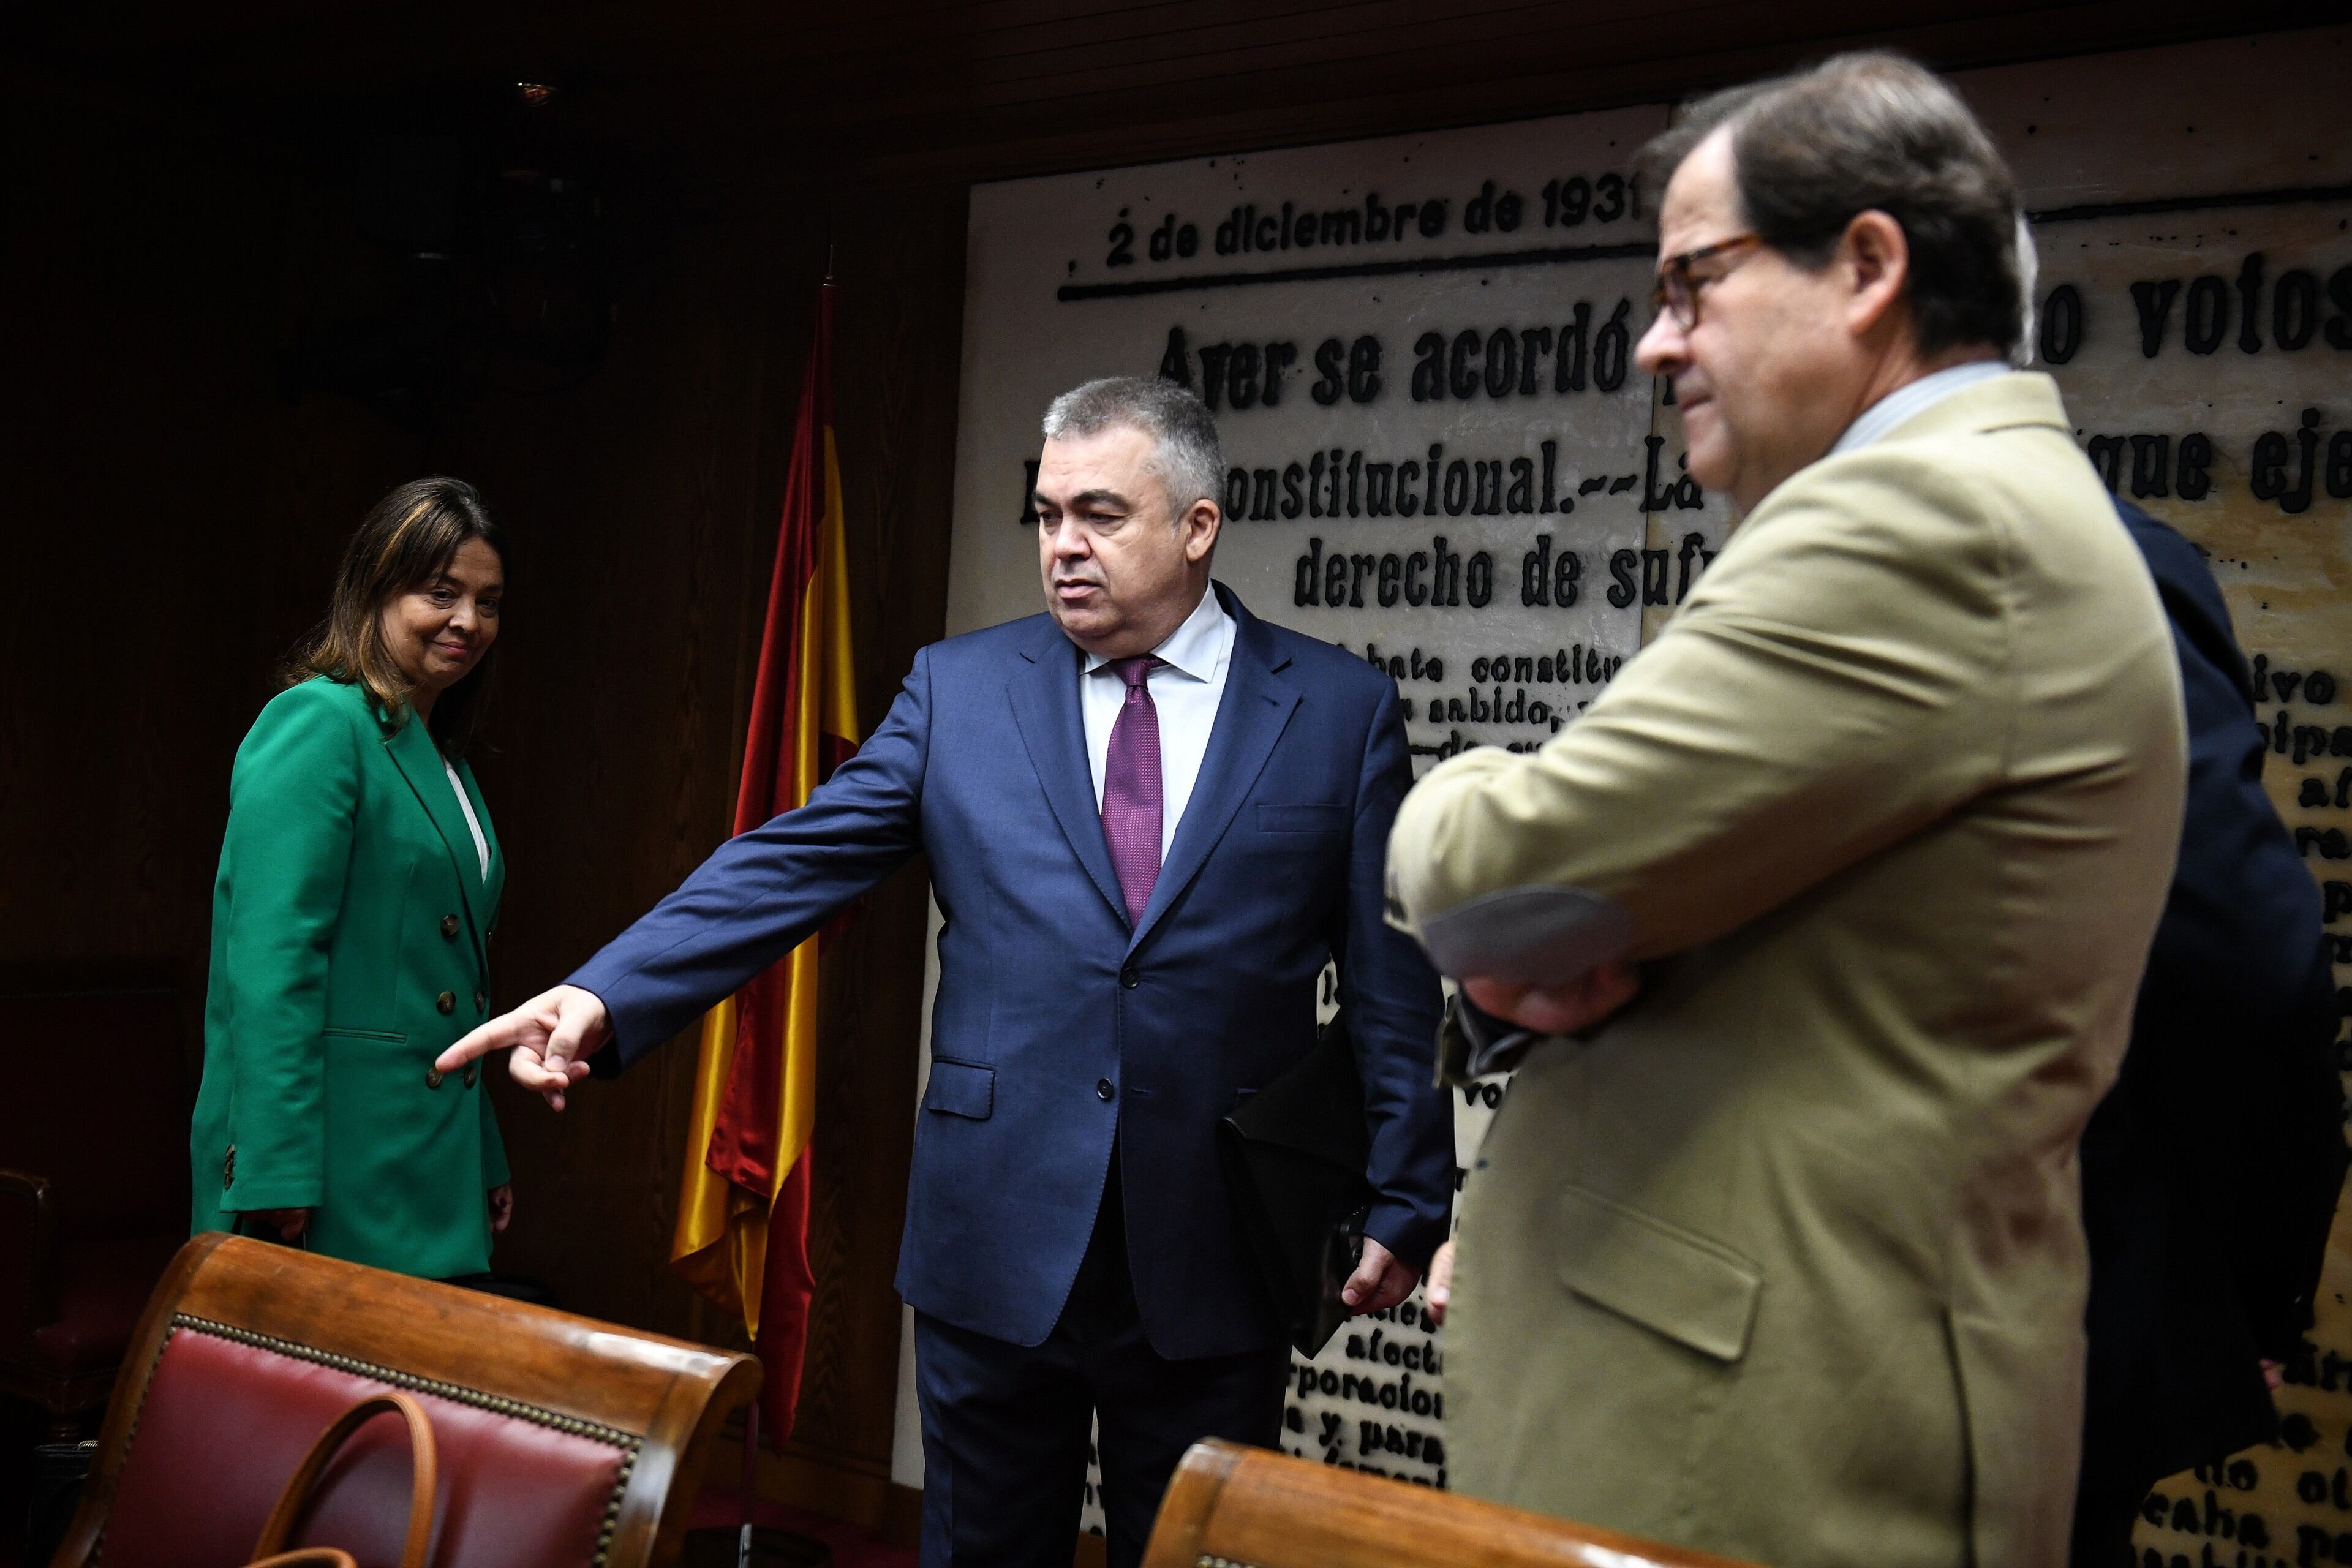 El secretario de organización del PSOE, Santos Cerdán, este martes en la comisión de investigación del 'caso Koldo' en el Senado.